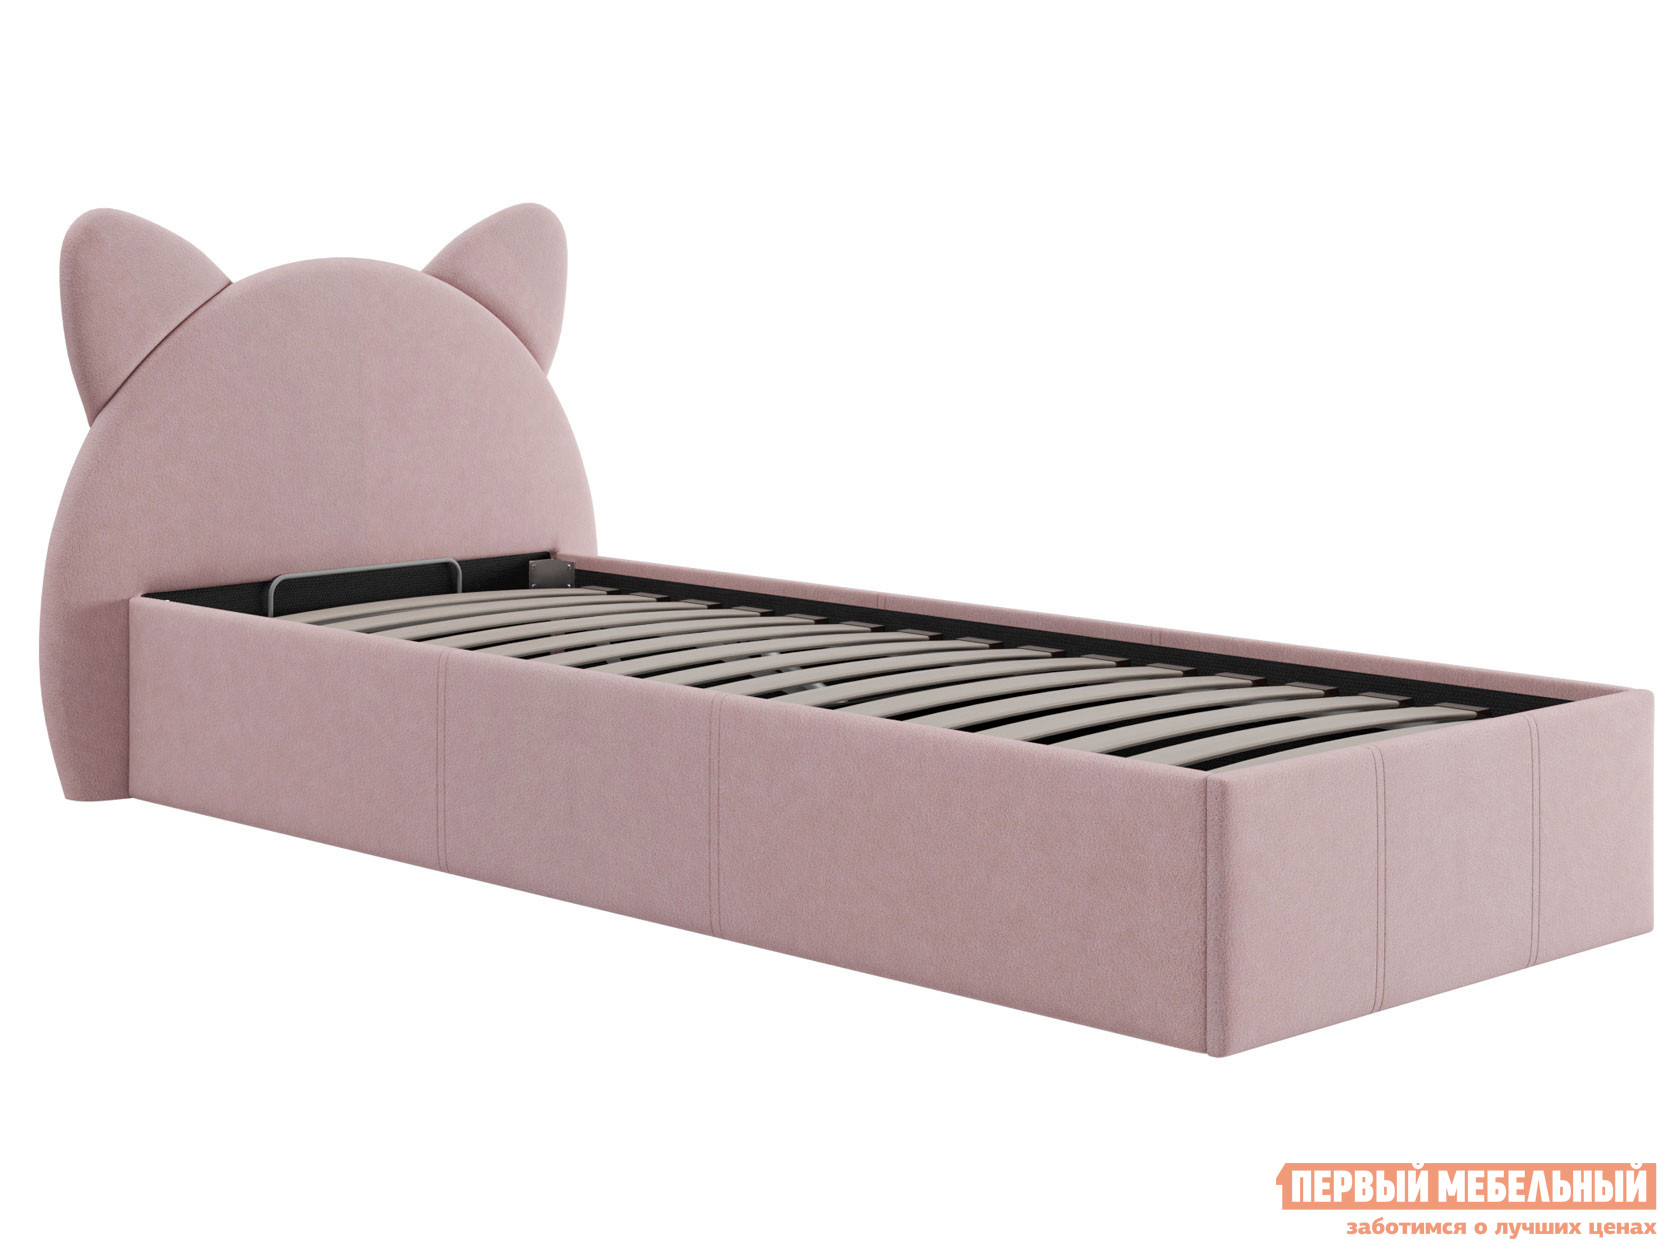 Детская кровать  Китти Розовый, велюр, 900 Х 2000 мм от Первый Мебельный